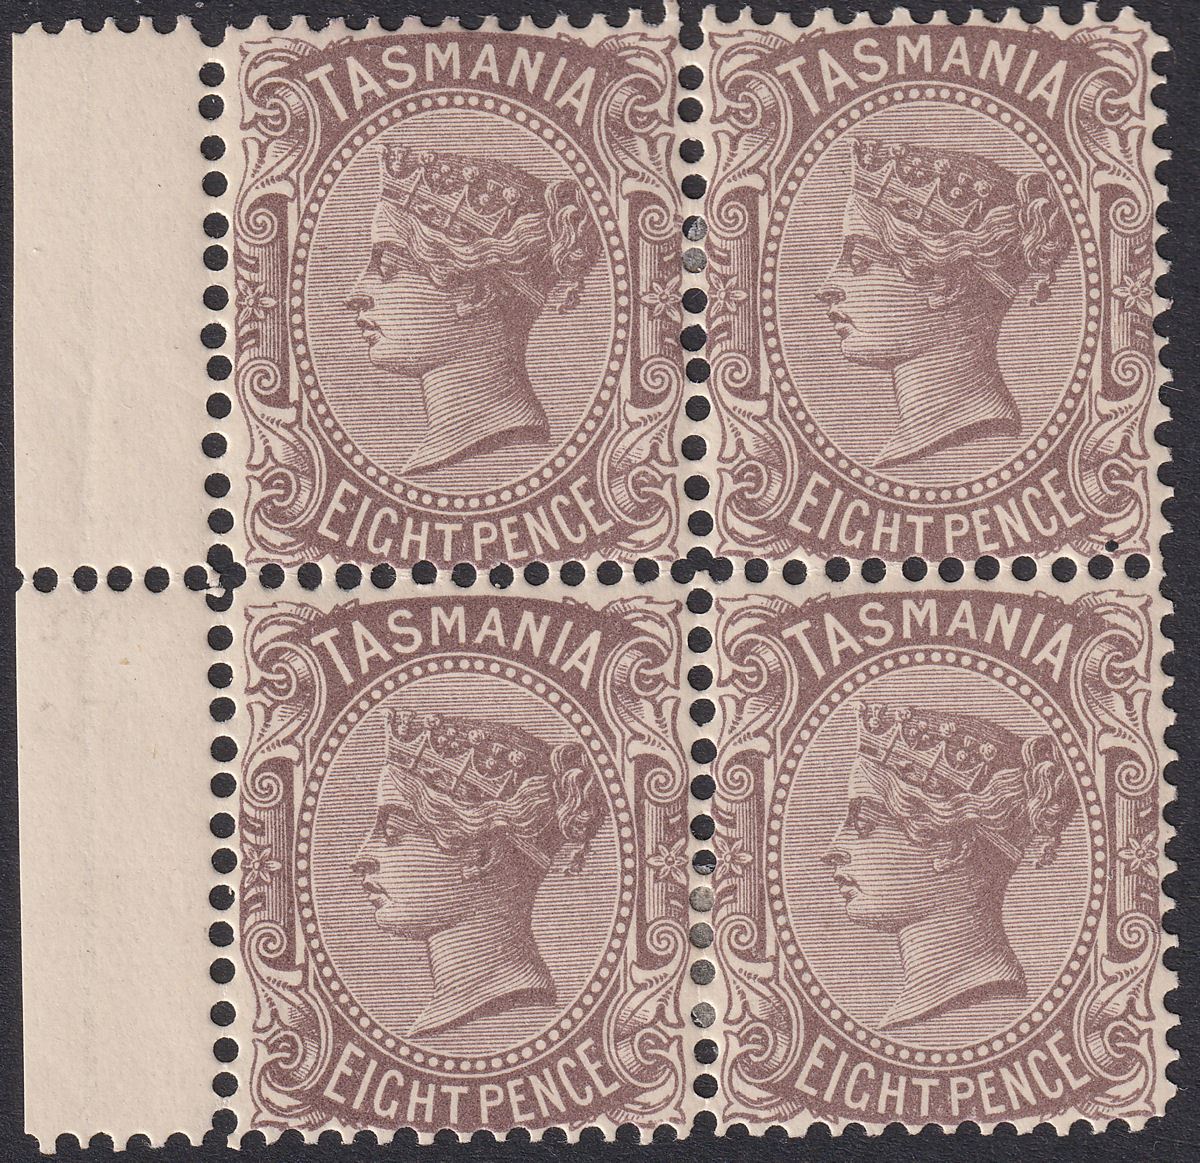 Tasmania 1907 QV 8d Purple-Brown perf 12½ Block of 4 Mint SG255 cat £108